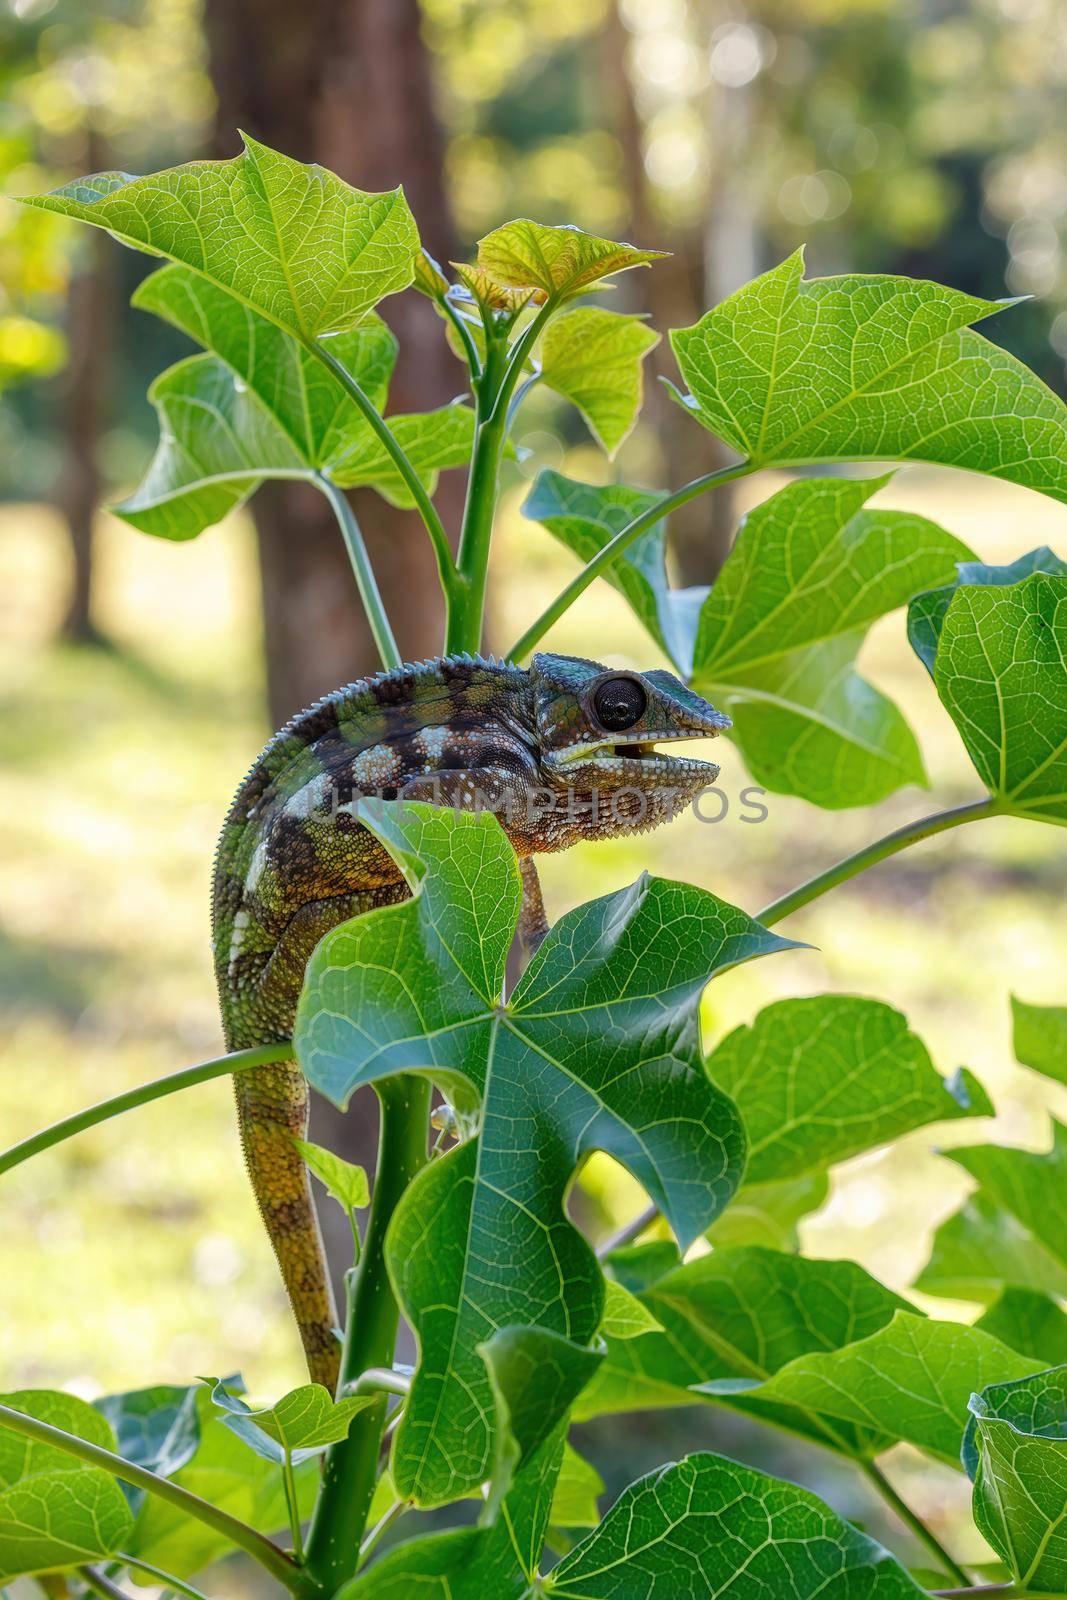 Panther chameleon, Furcifer pardalis, Masoala Madagascar by artush